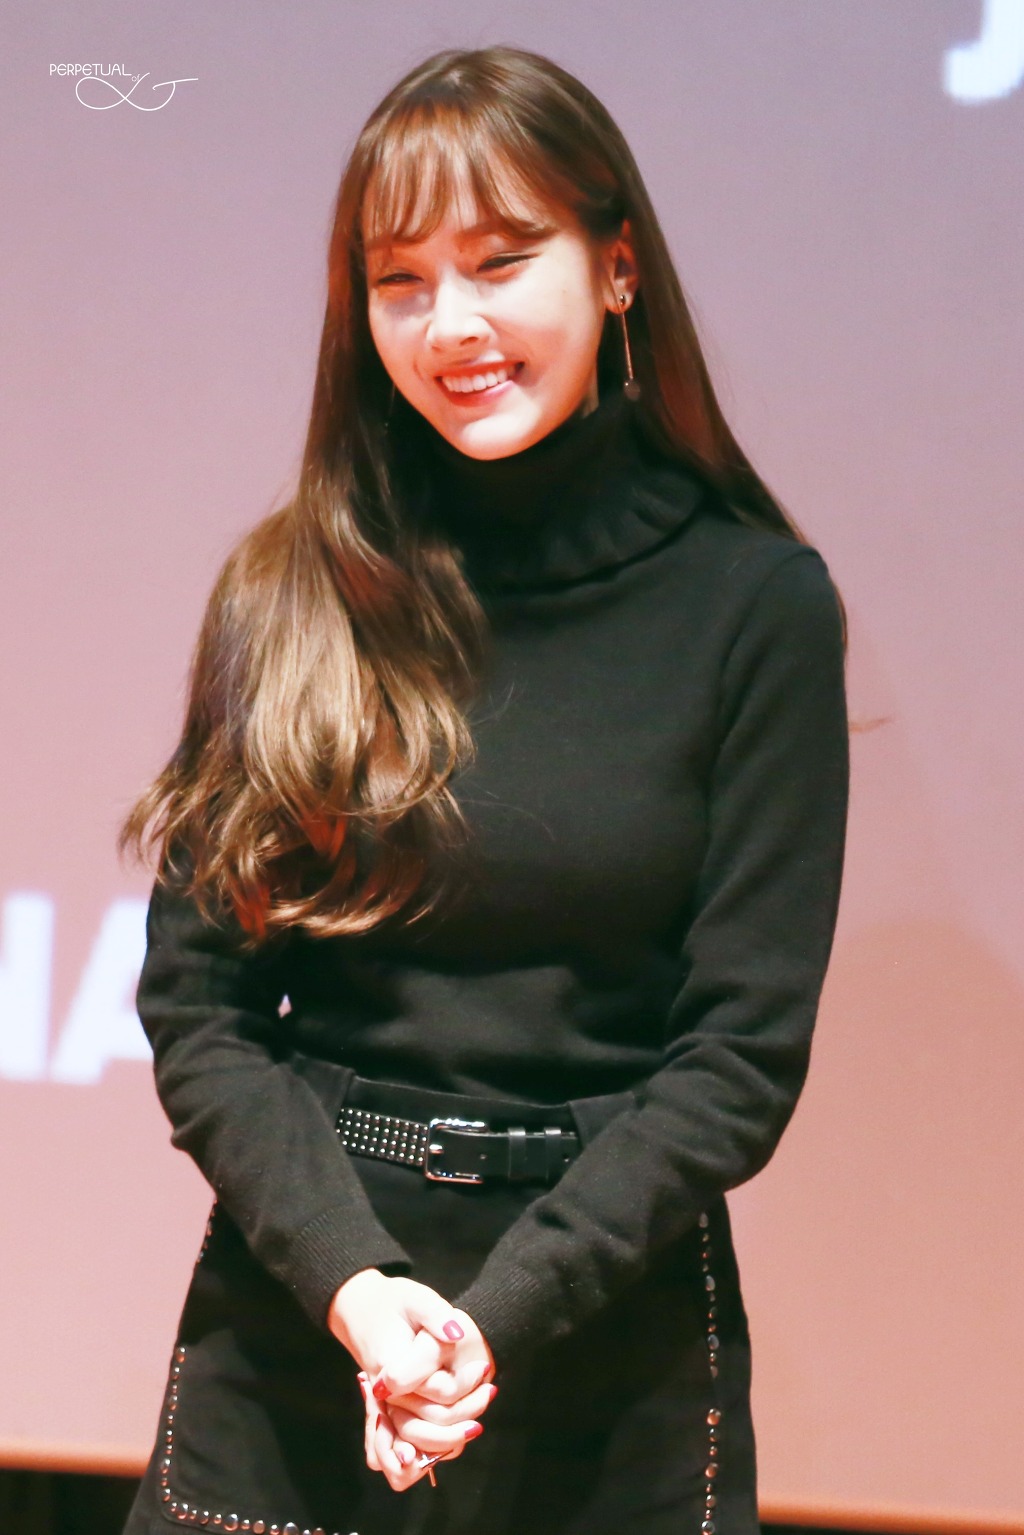 [PIC][07-11-2015]Jessica tham dự buổi Fansign cho dòng mỹ phẩm "J.ESTINA RED" tại "Myeongdong Lotte Cinema" vào chiều nay 23261940563EB1CC270F0C